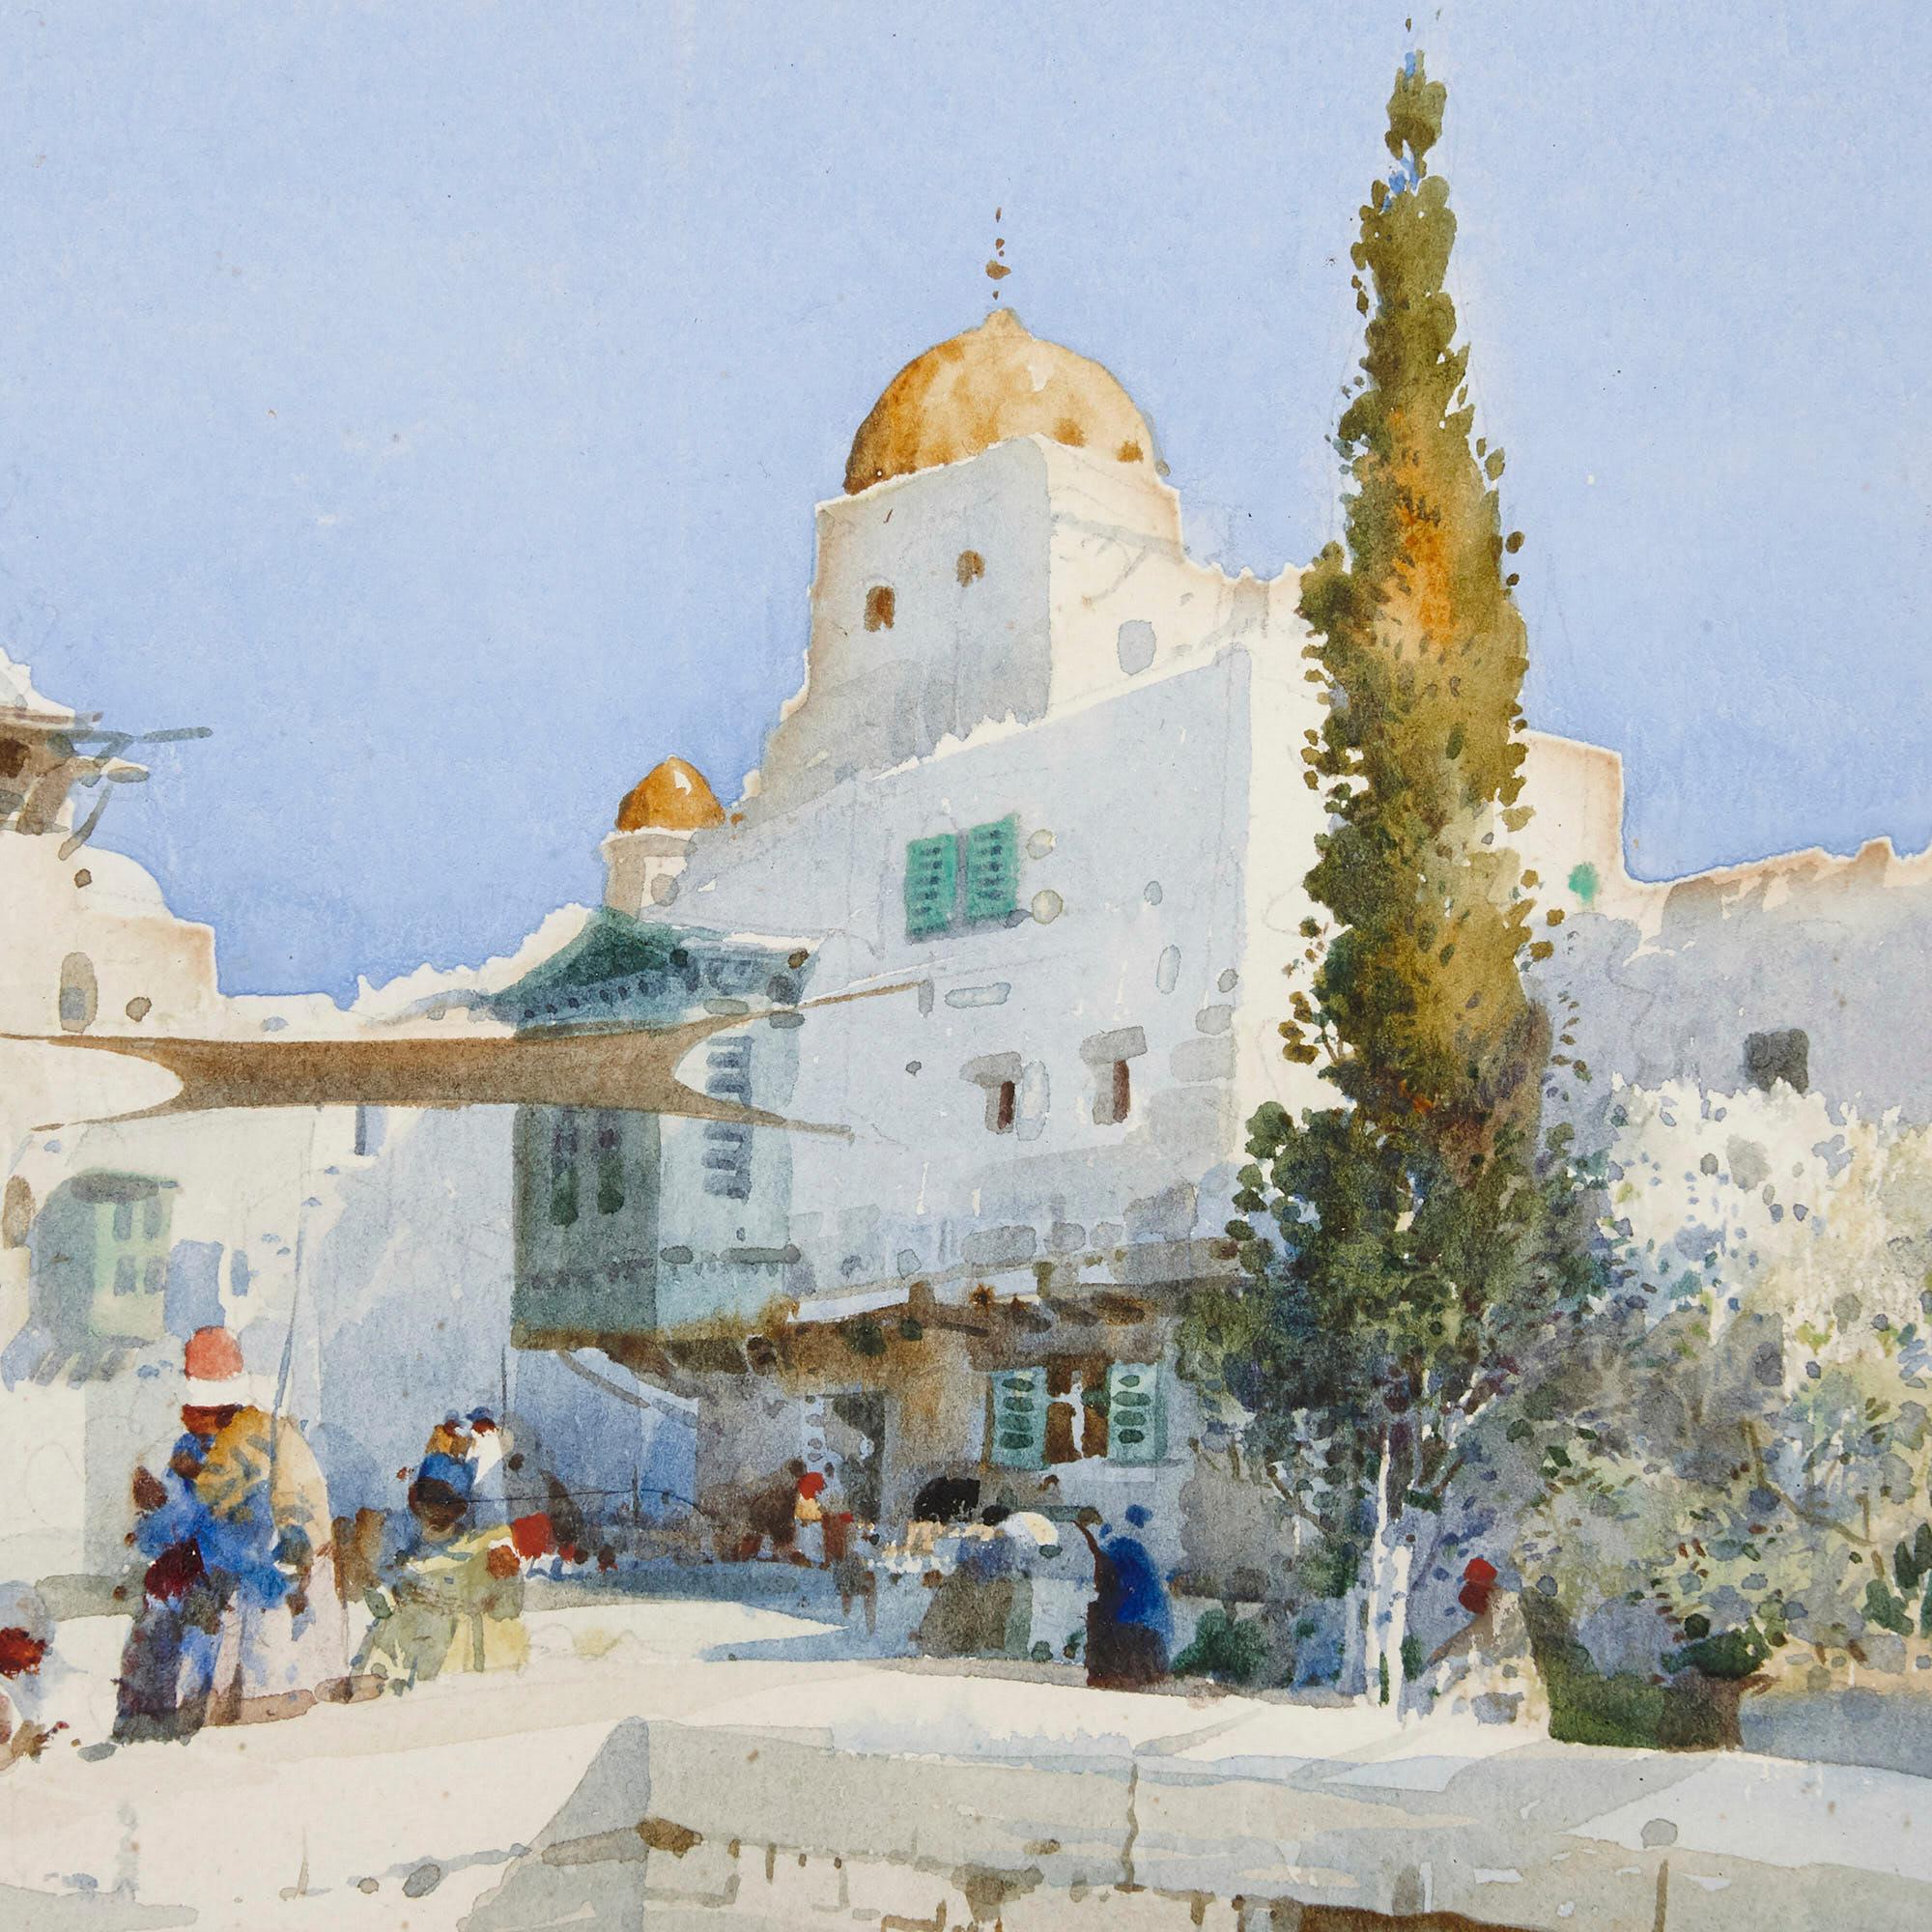 
Cette aquarelle sur papier, réalisée par l'artiste anglais Noel Harry Leaver, représente un décor urbain typiquement moyen-oriental ou nord-africain, dominé par une mosquée à dôme. À l'avant de la mosquée, une petite place est peuplée de plusieurs